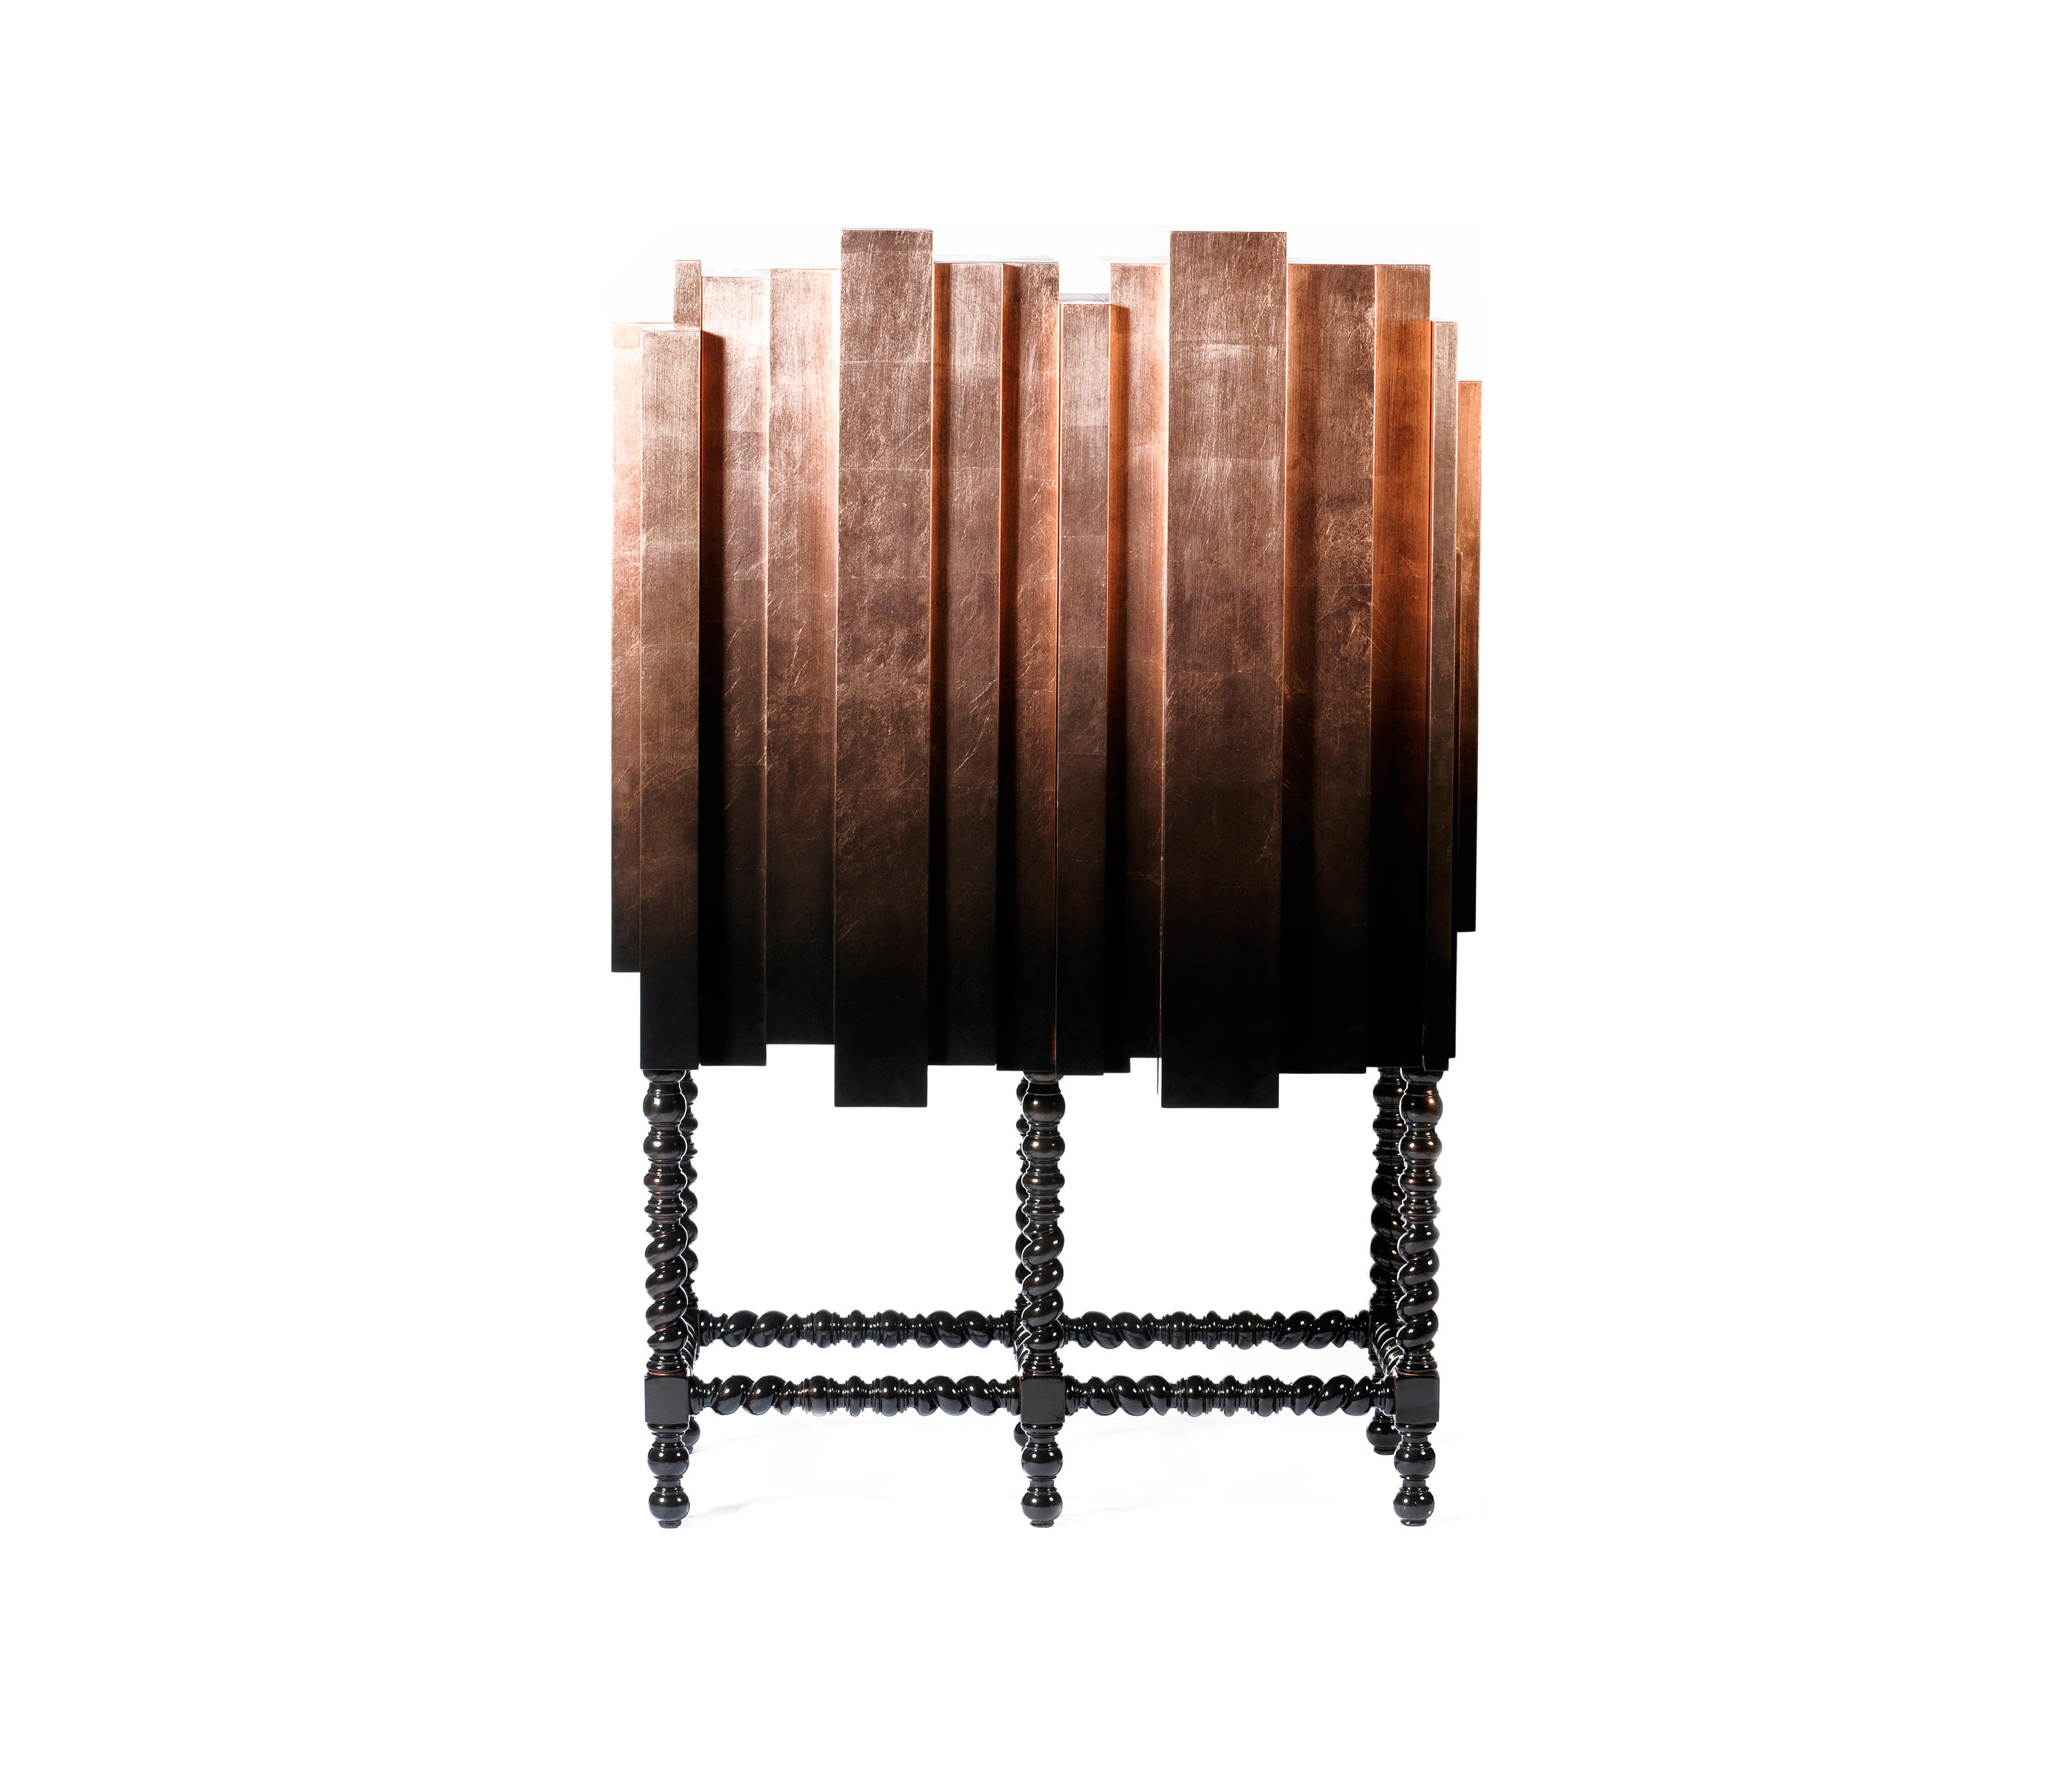 D Manuel Cabinet Designer Furniture Architonic